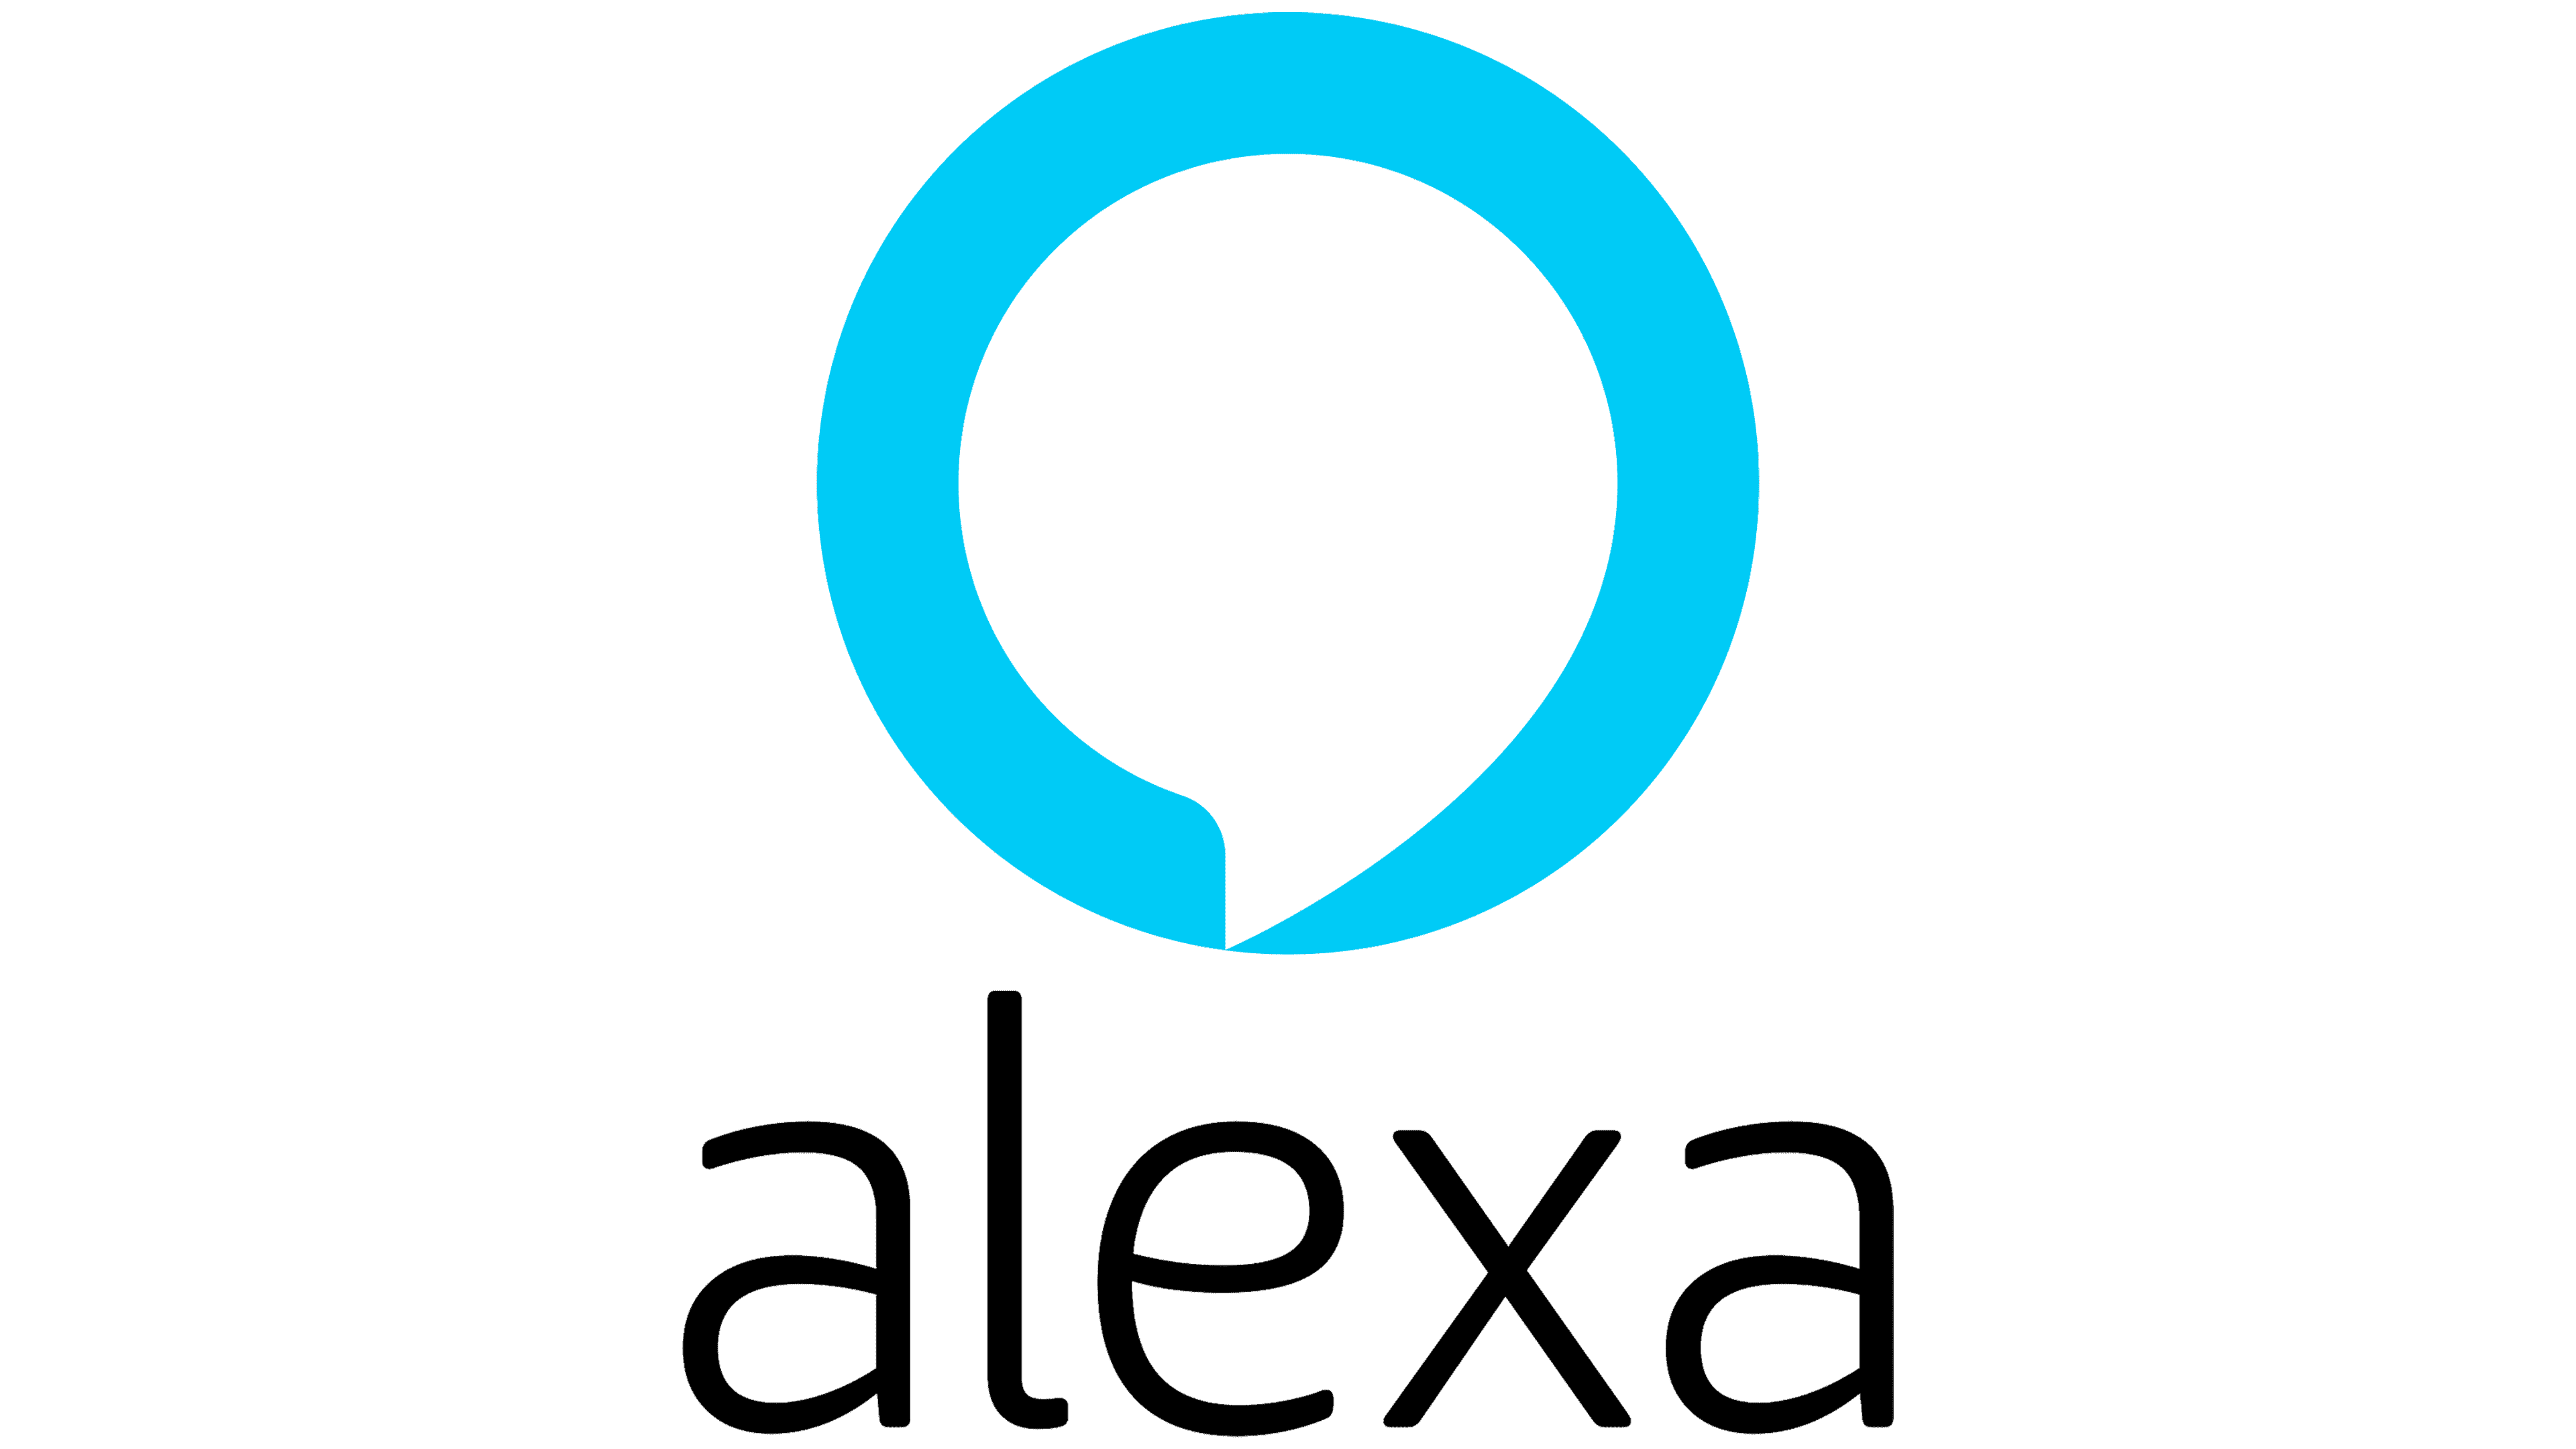 Amazon Alexa Emblem 